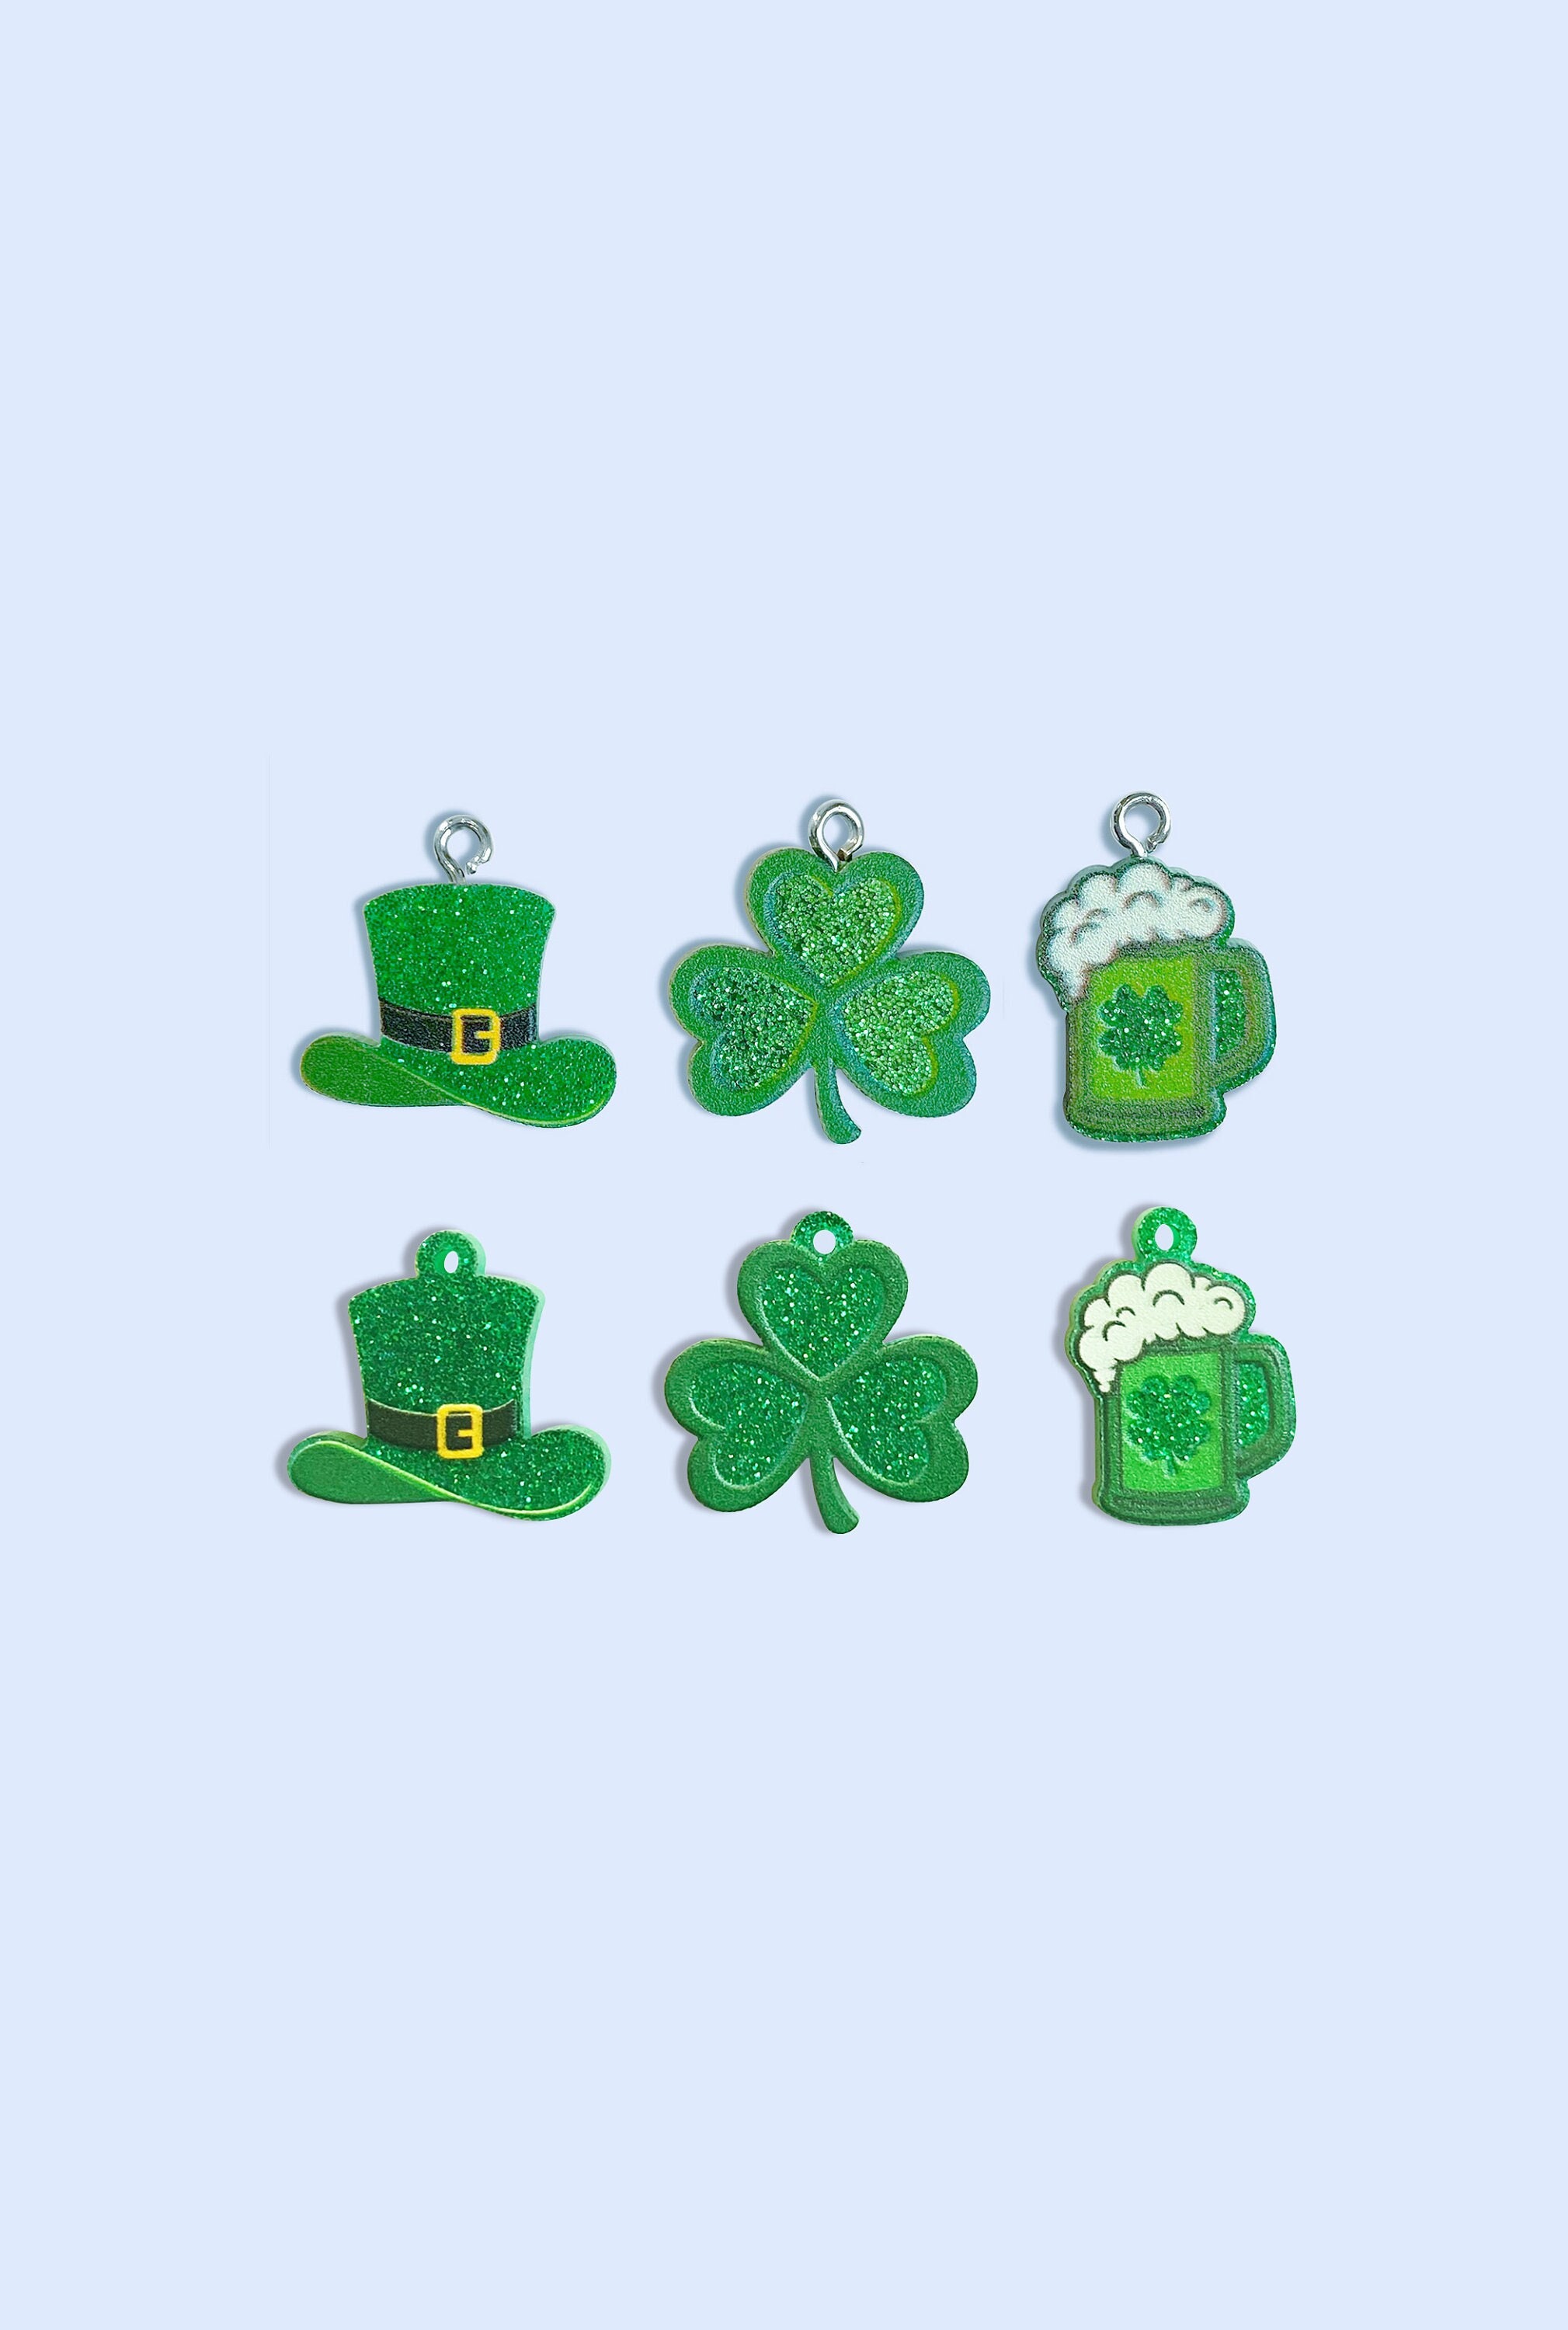 St Patrick's Day Bracelet with Vintage Medal – Powerbeads by jen